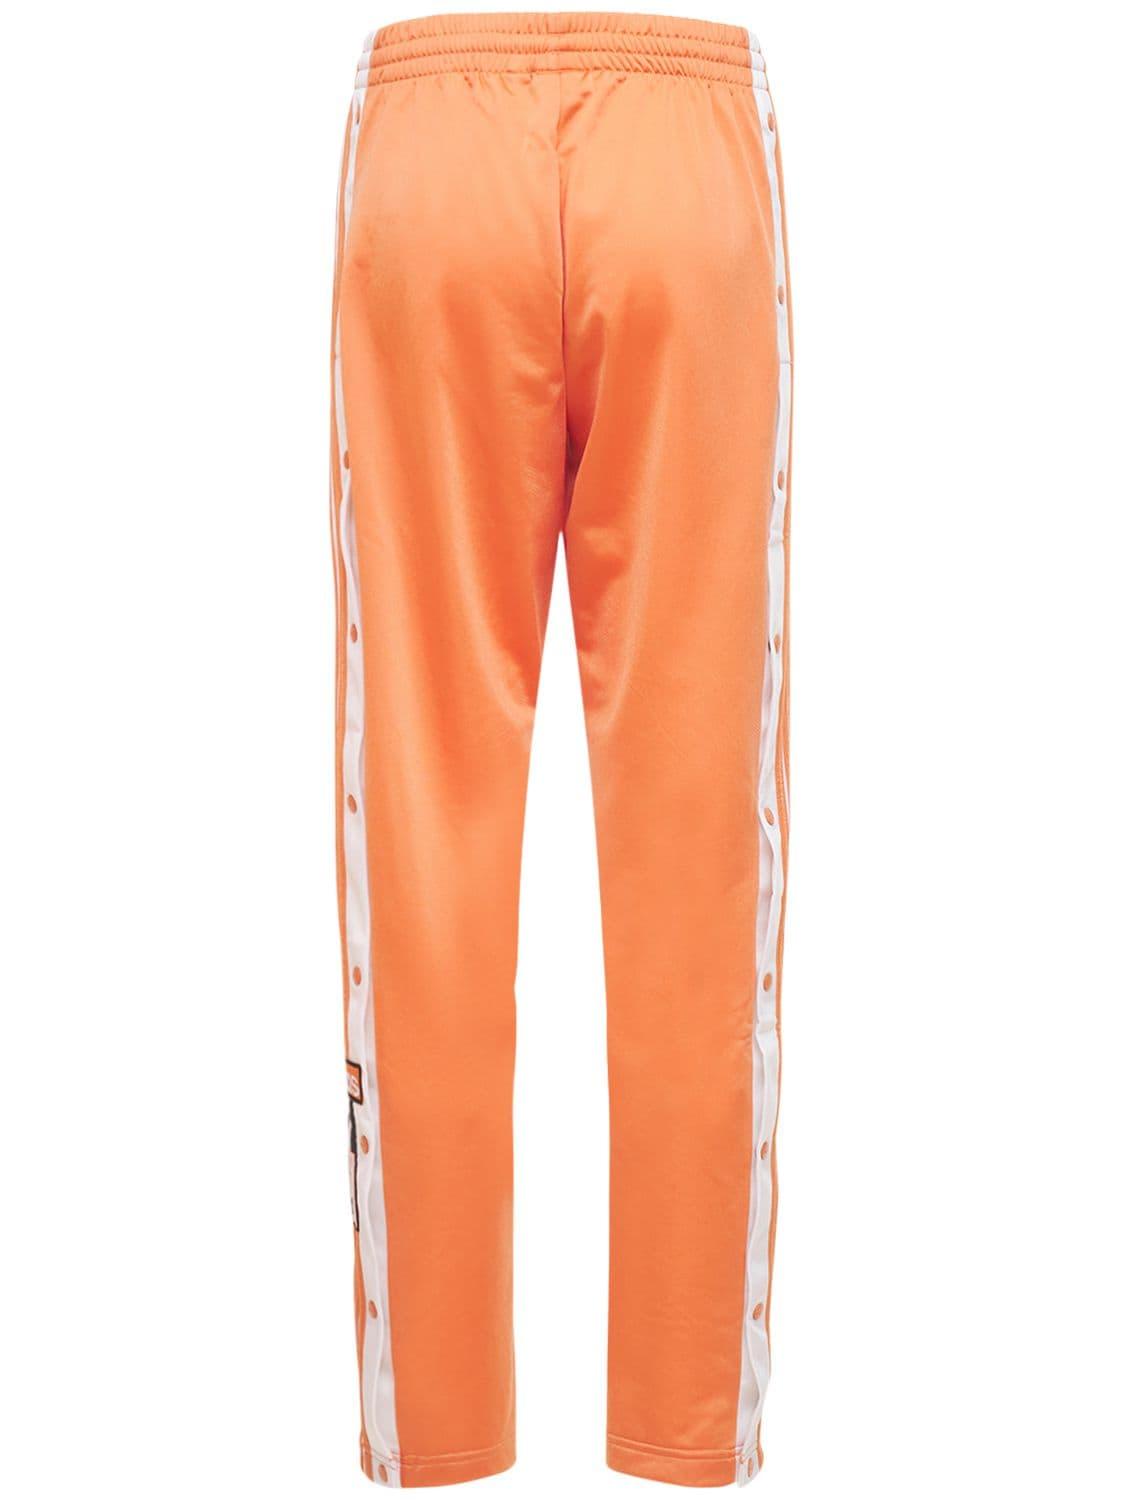 adidas Originals Adibreak Tp Pants in Orange | Lyst